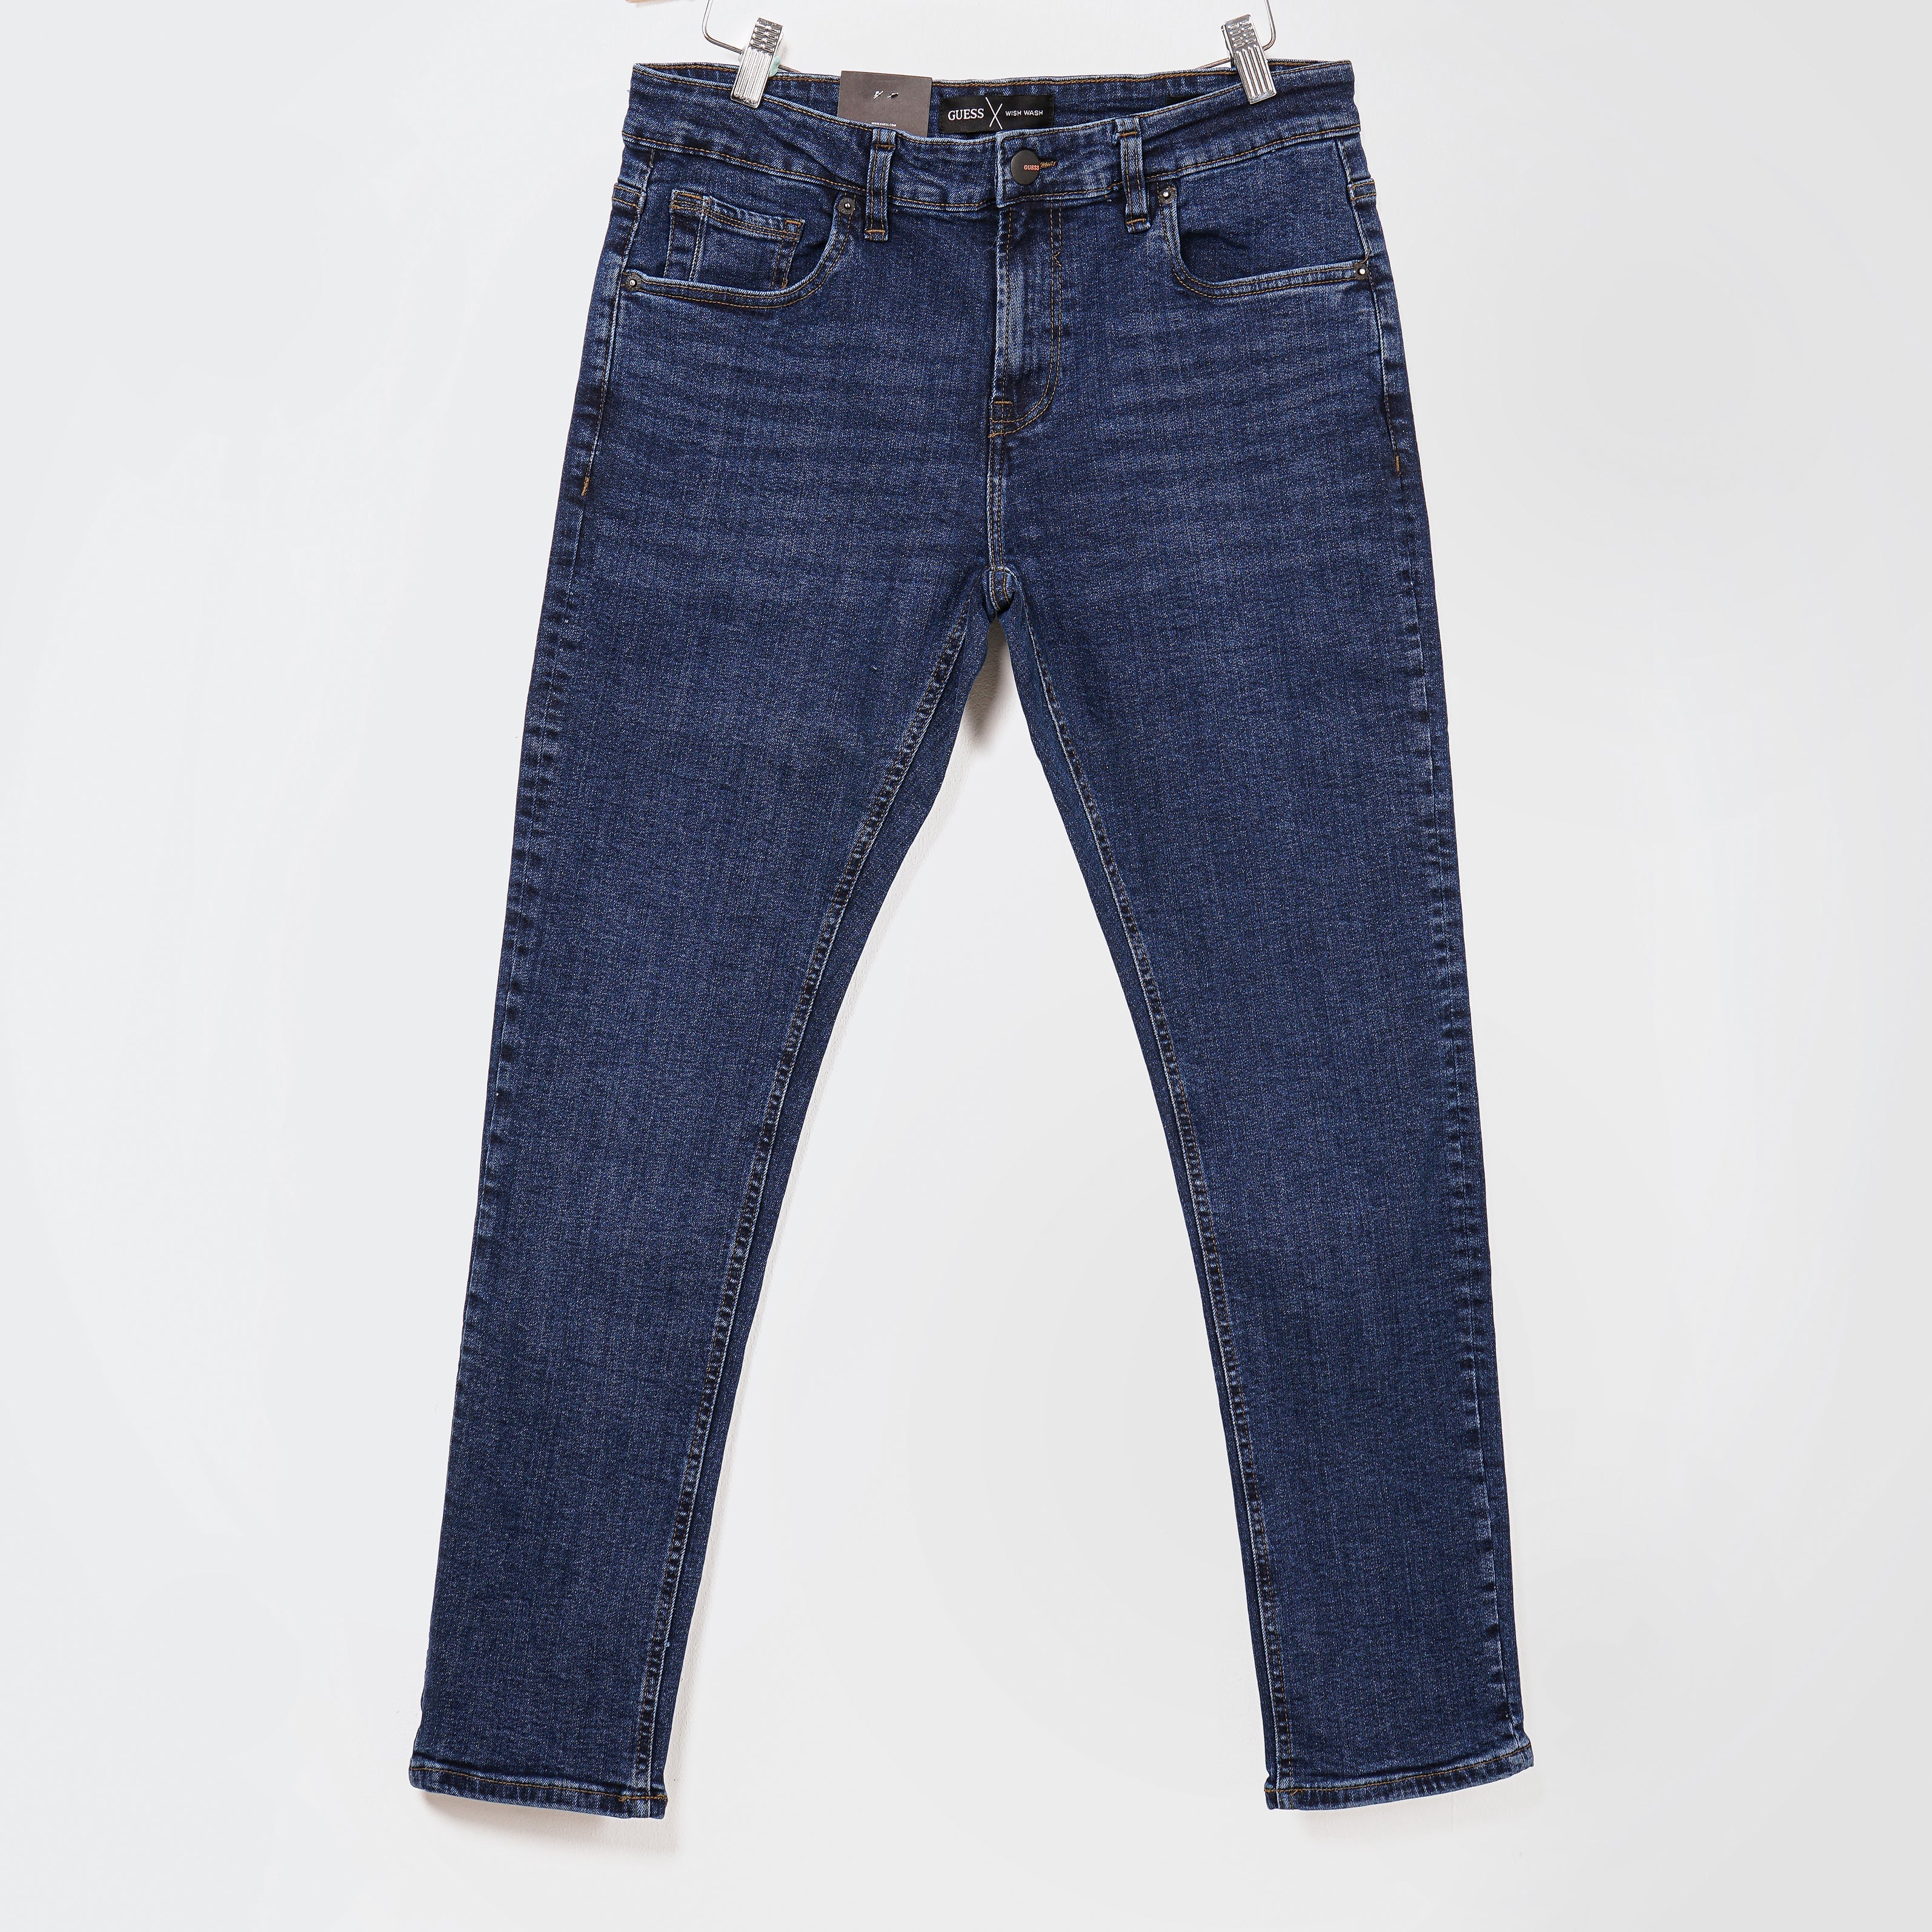 Original Guess Slim Fit low Rise Jeans - Marca Deals - Guess